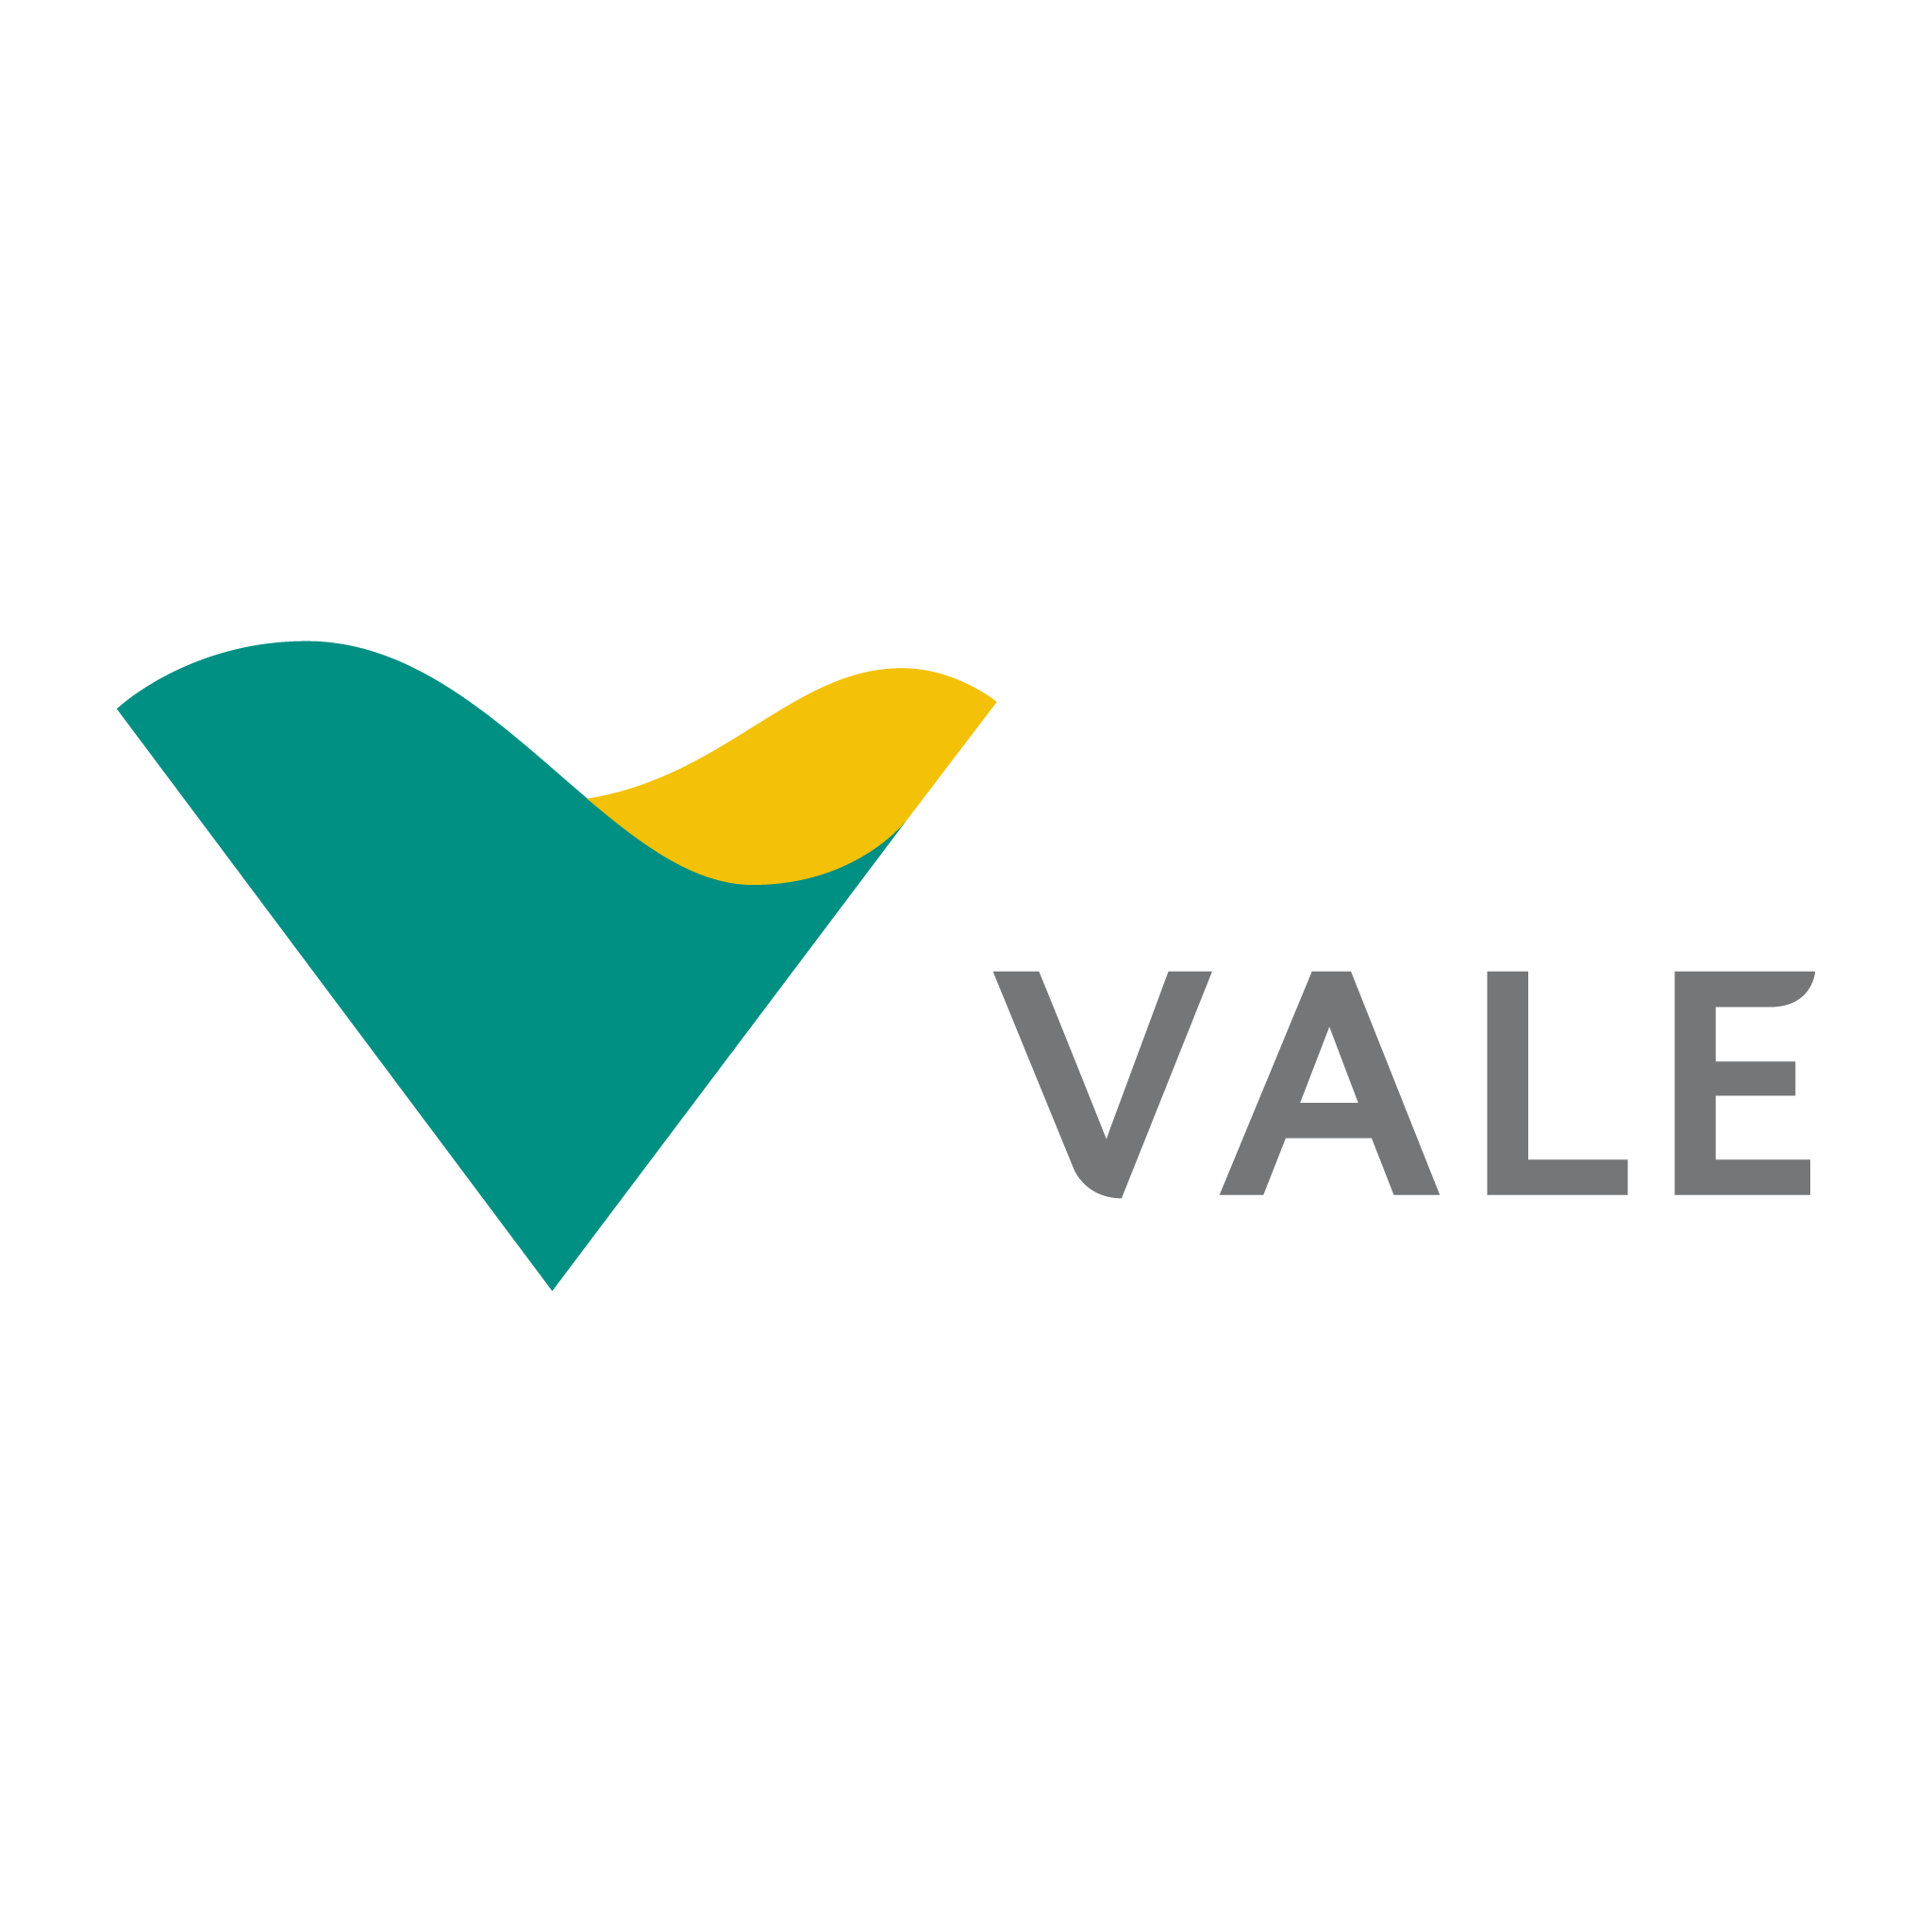 VALE3: Comprar ou vender ações da Vale?